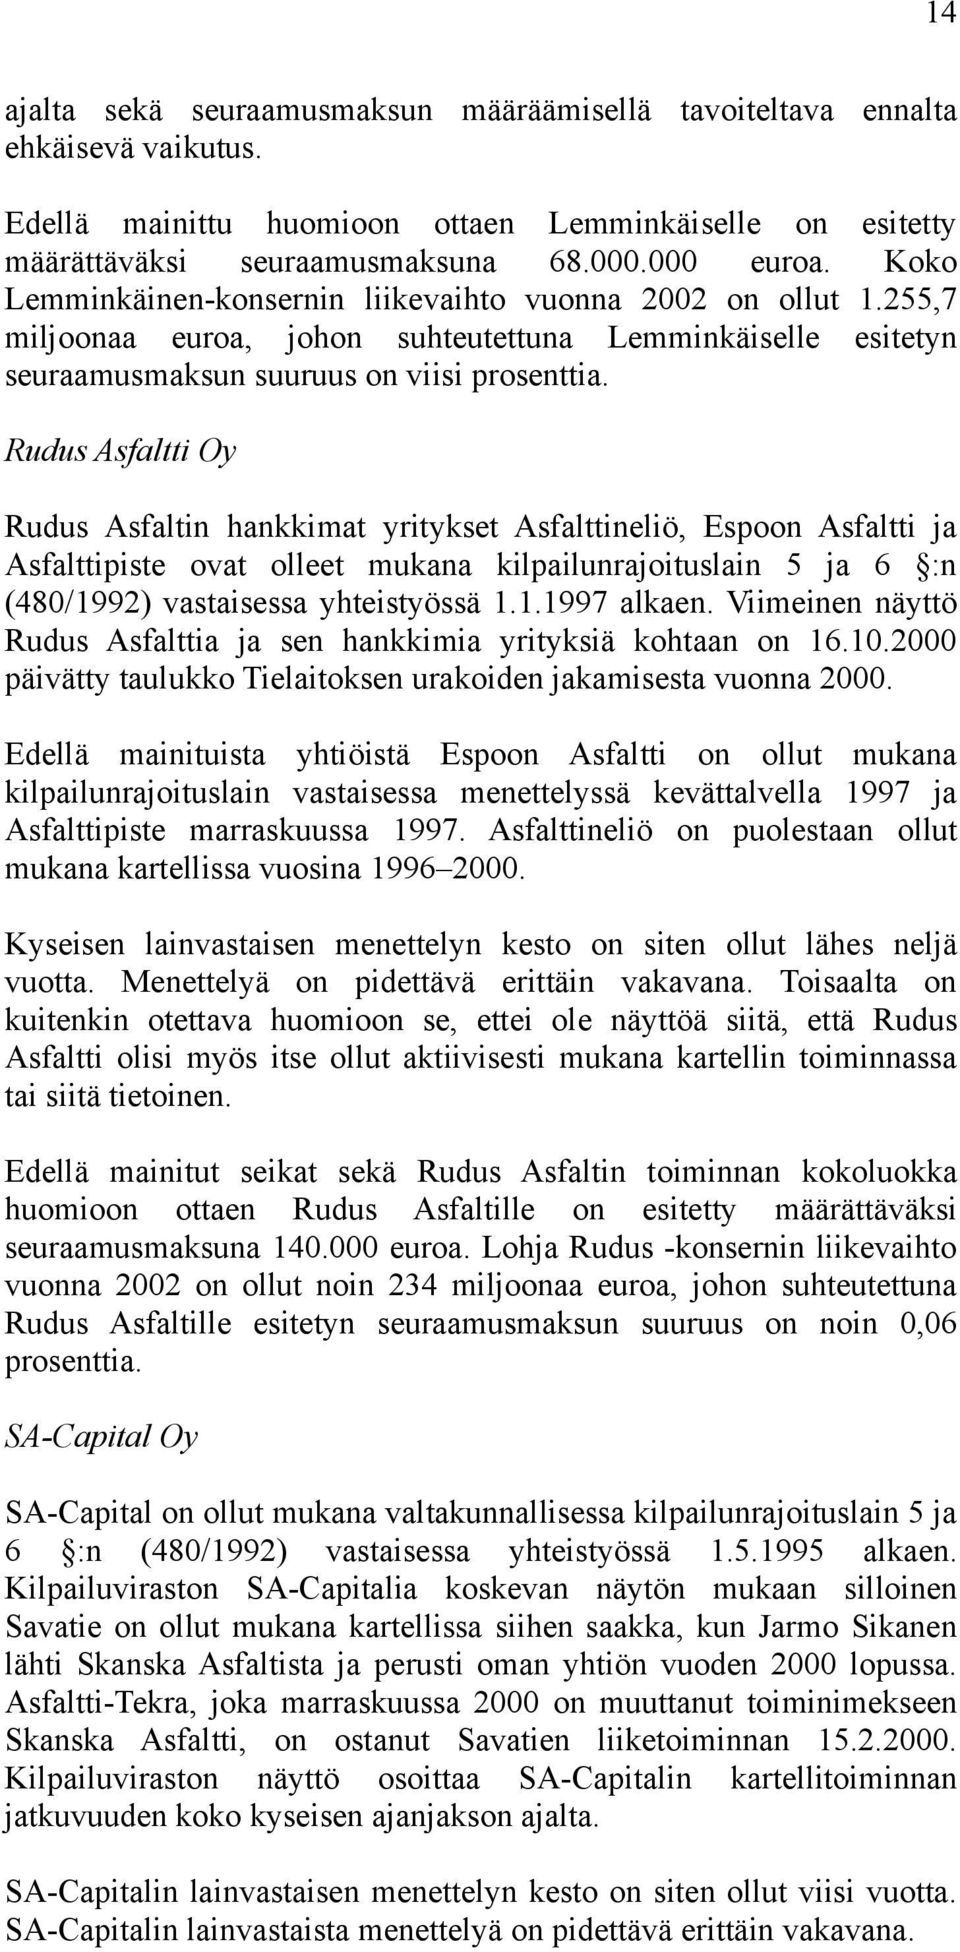 Rudus Asfaltti Oy Rudus Asfaltin hankkimat yritykset Asfalttineliö, Espoon Asfaltti ja Asfalttipiste ovat olleet mukana kilpailunrajoituslain 5 ja 6 :n (480/1992) vastaisessa yhteistyössä 1.1.1997 alkaen.